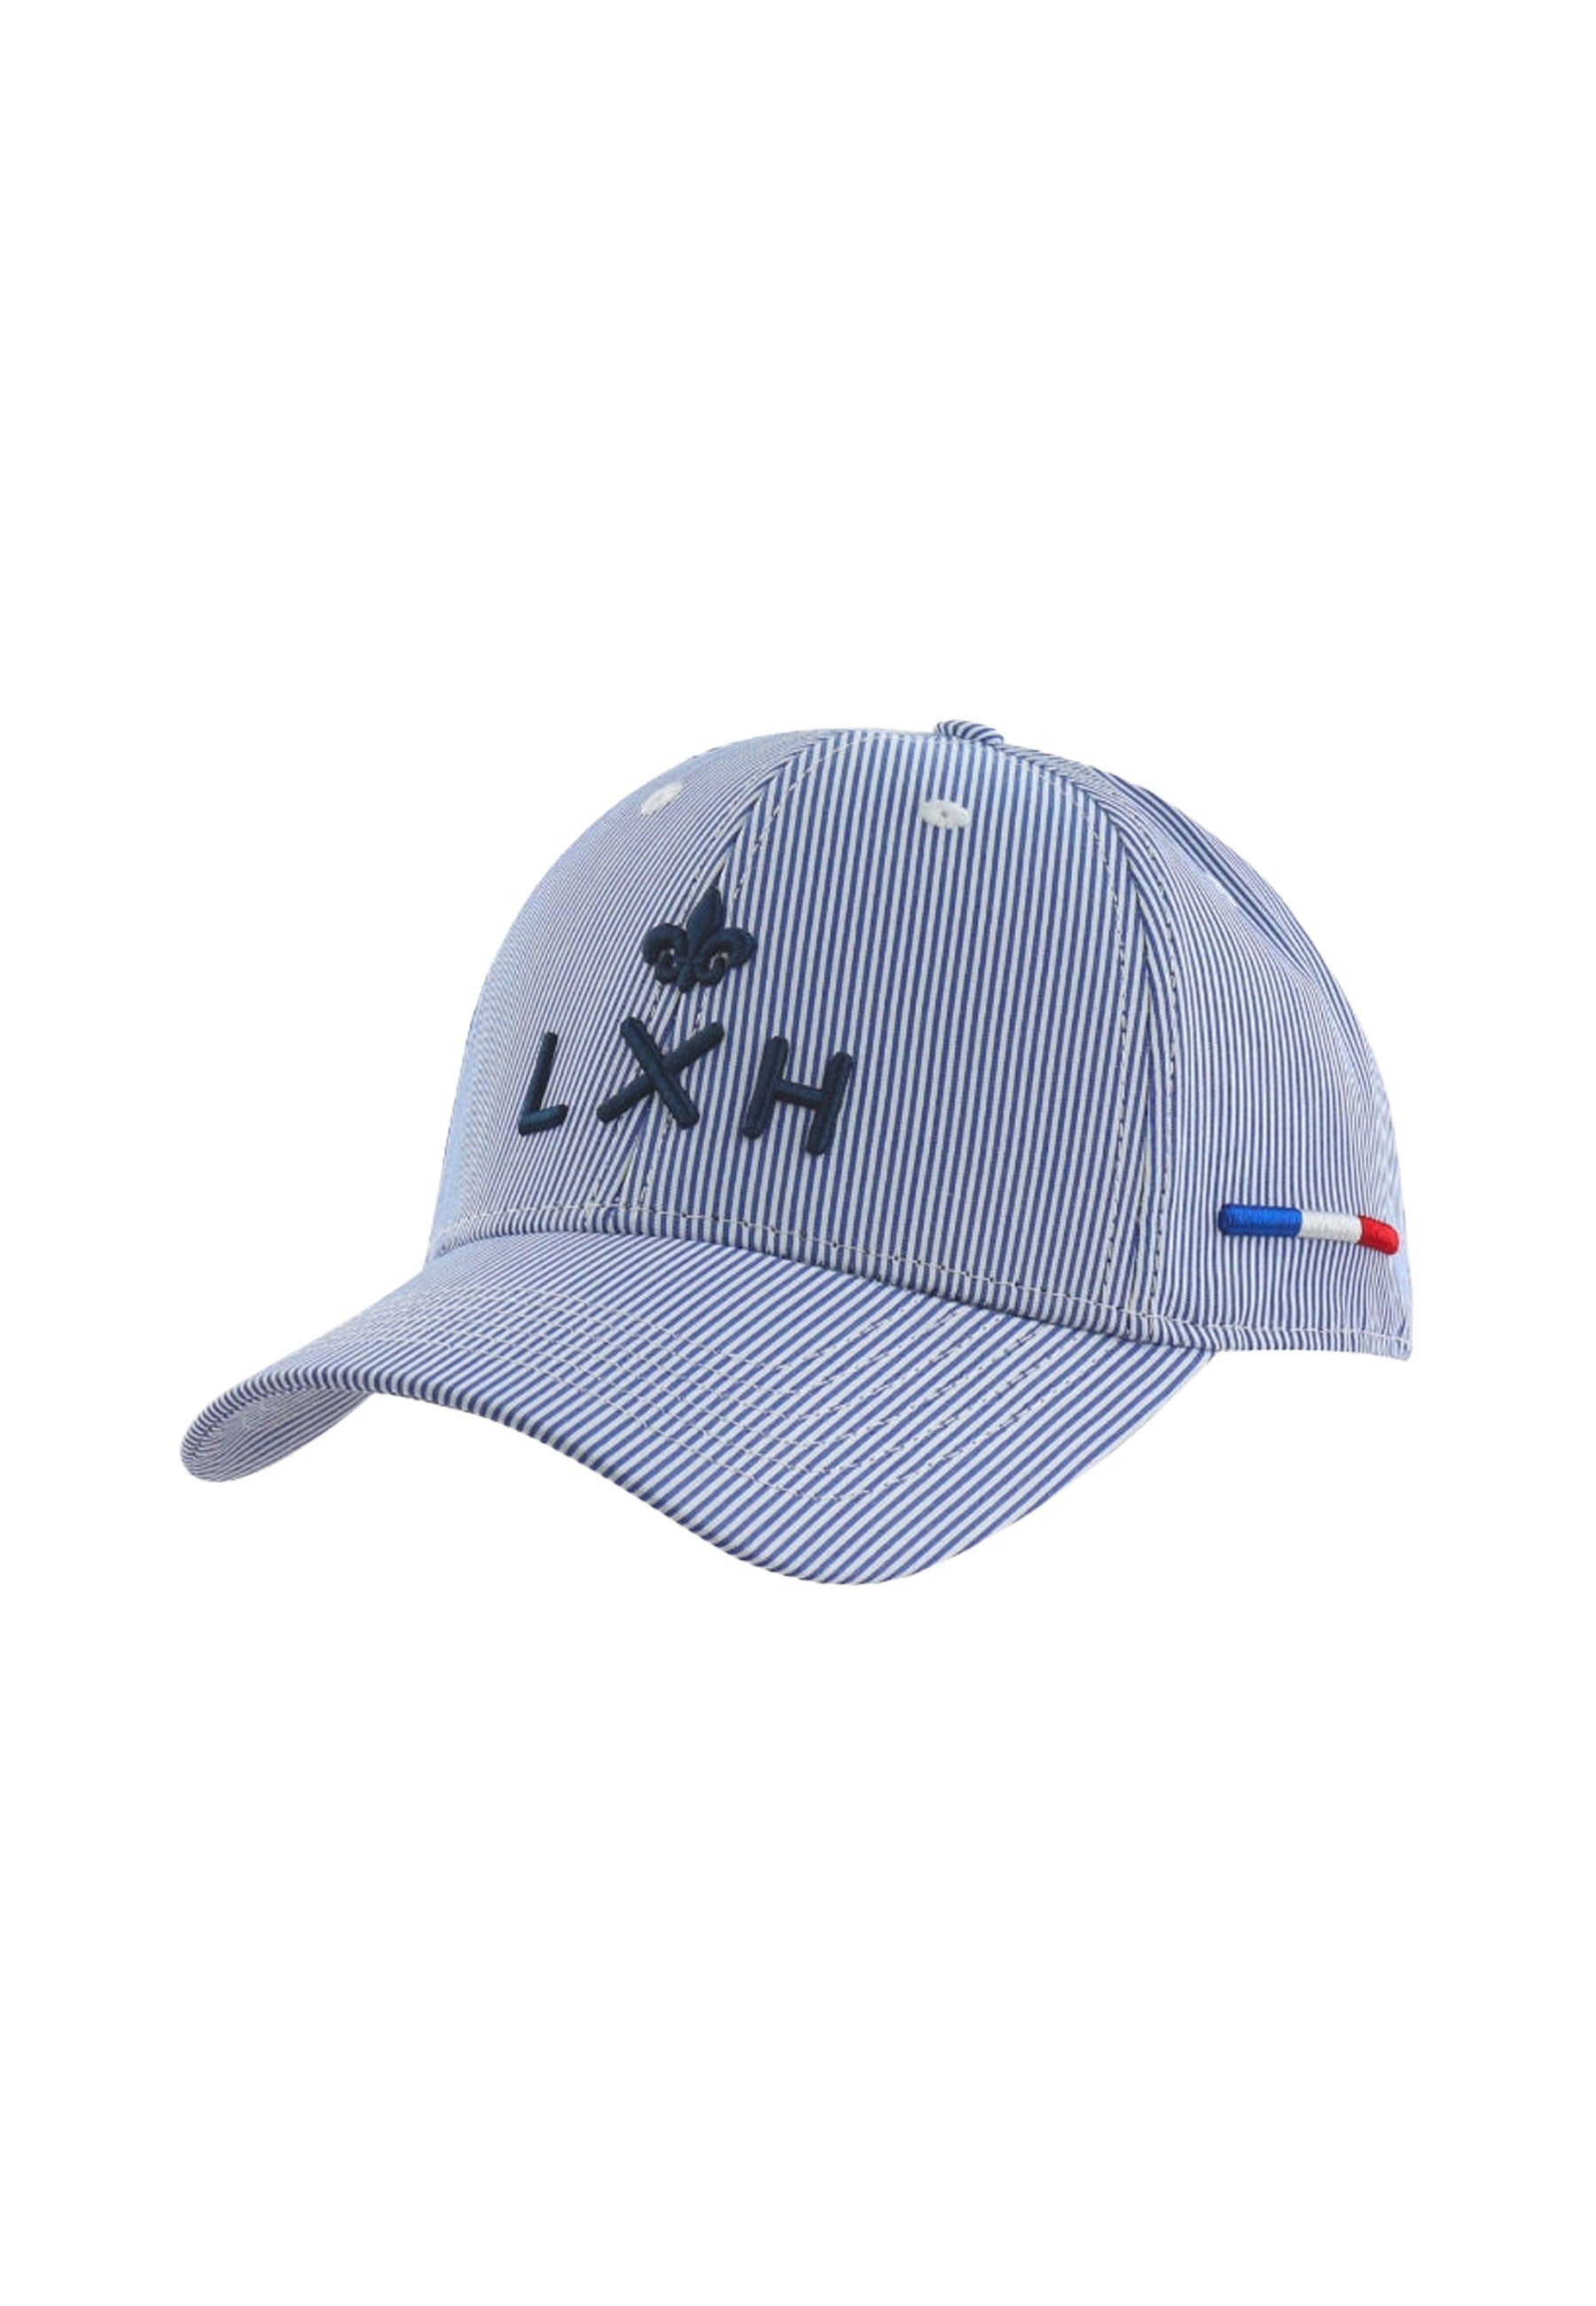 Casquette Ramatuelle in Blanche / Bleu Marine Caps LXH   